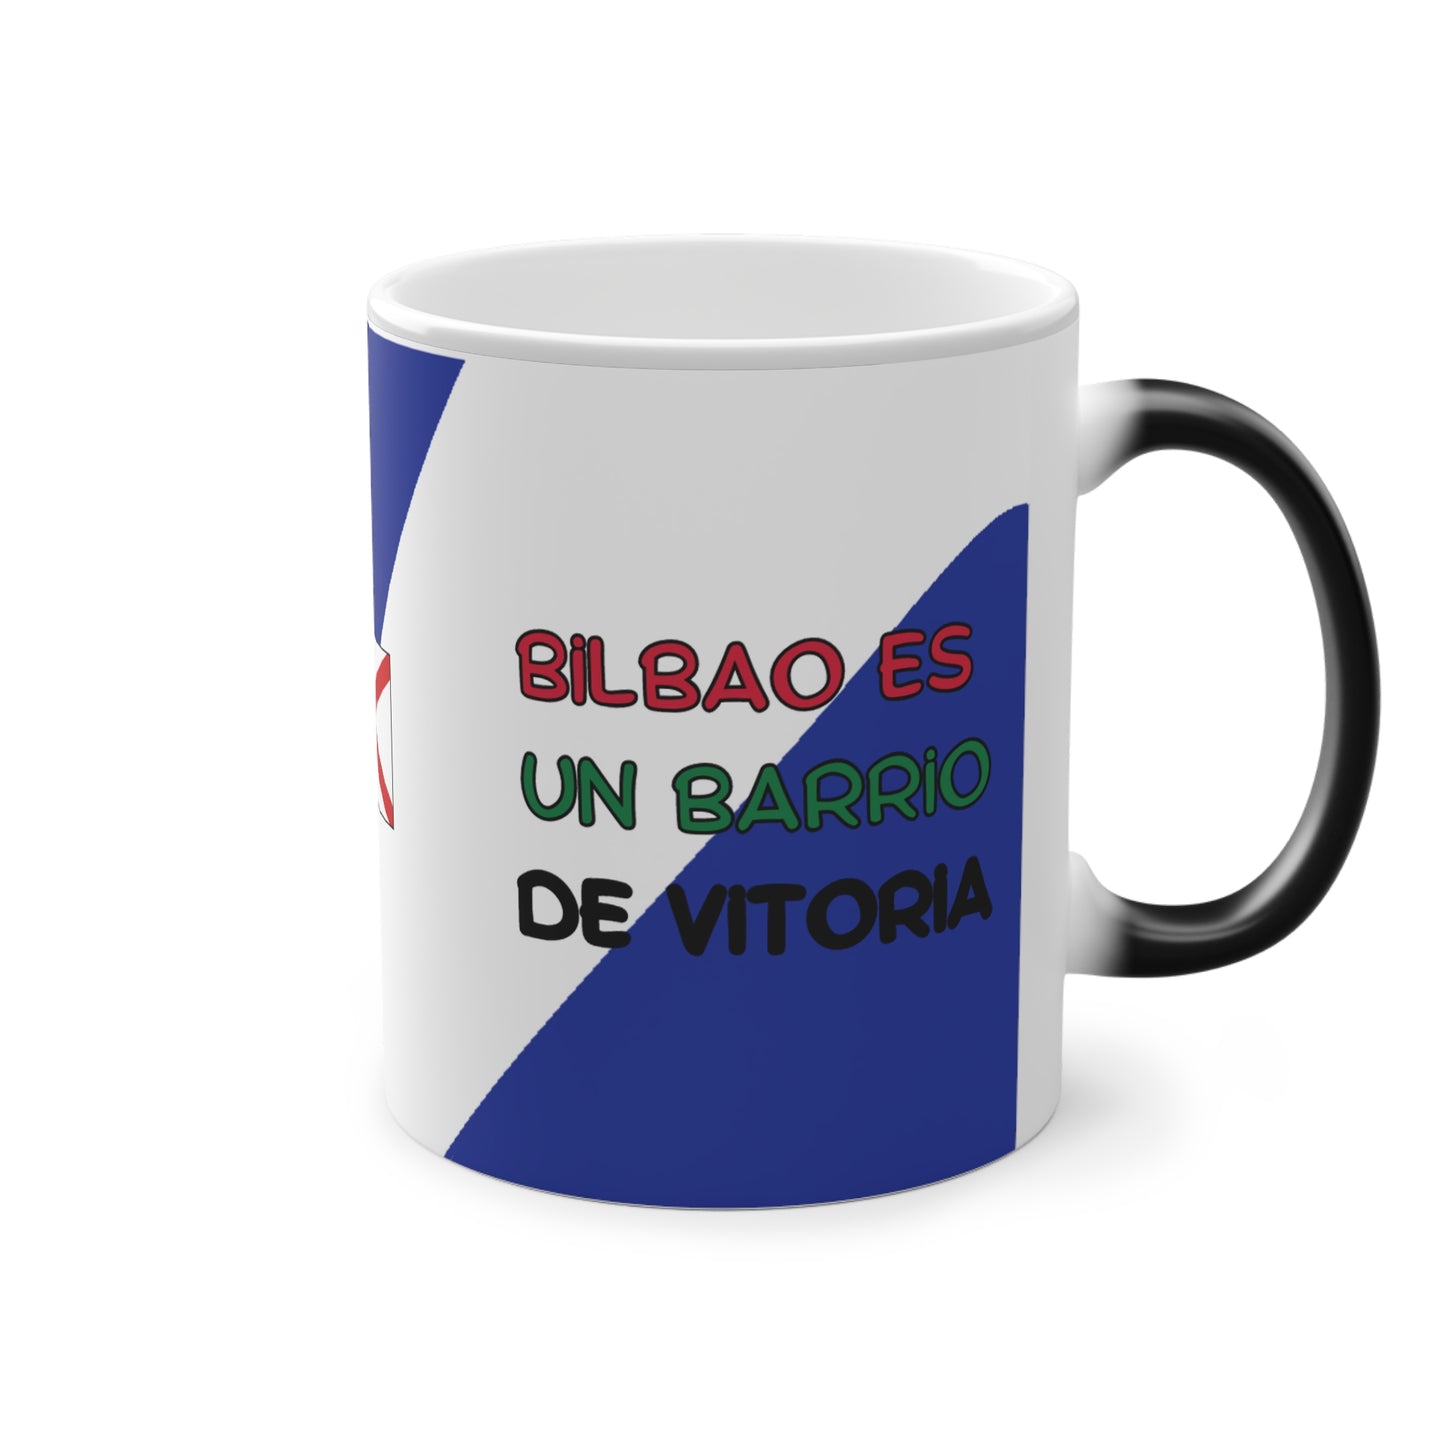 Magic Mug Meme | Bilbao y Vitoria | Bilbao es un barrio de Vitoria